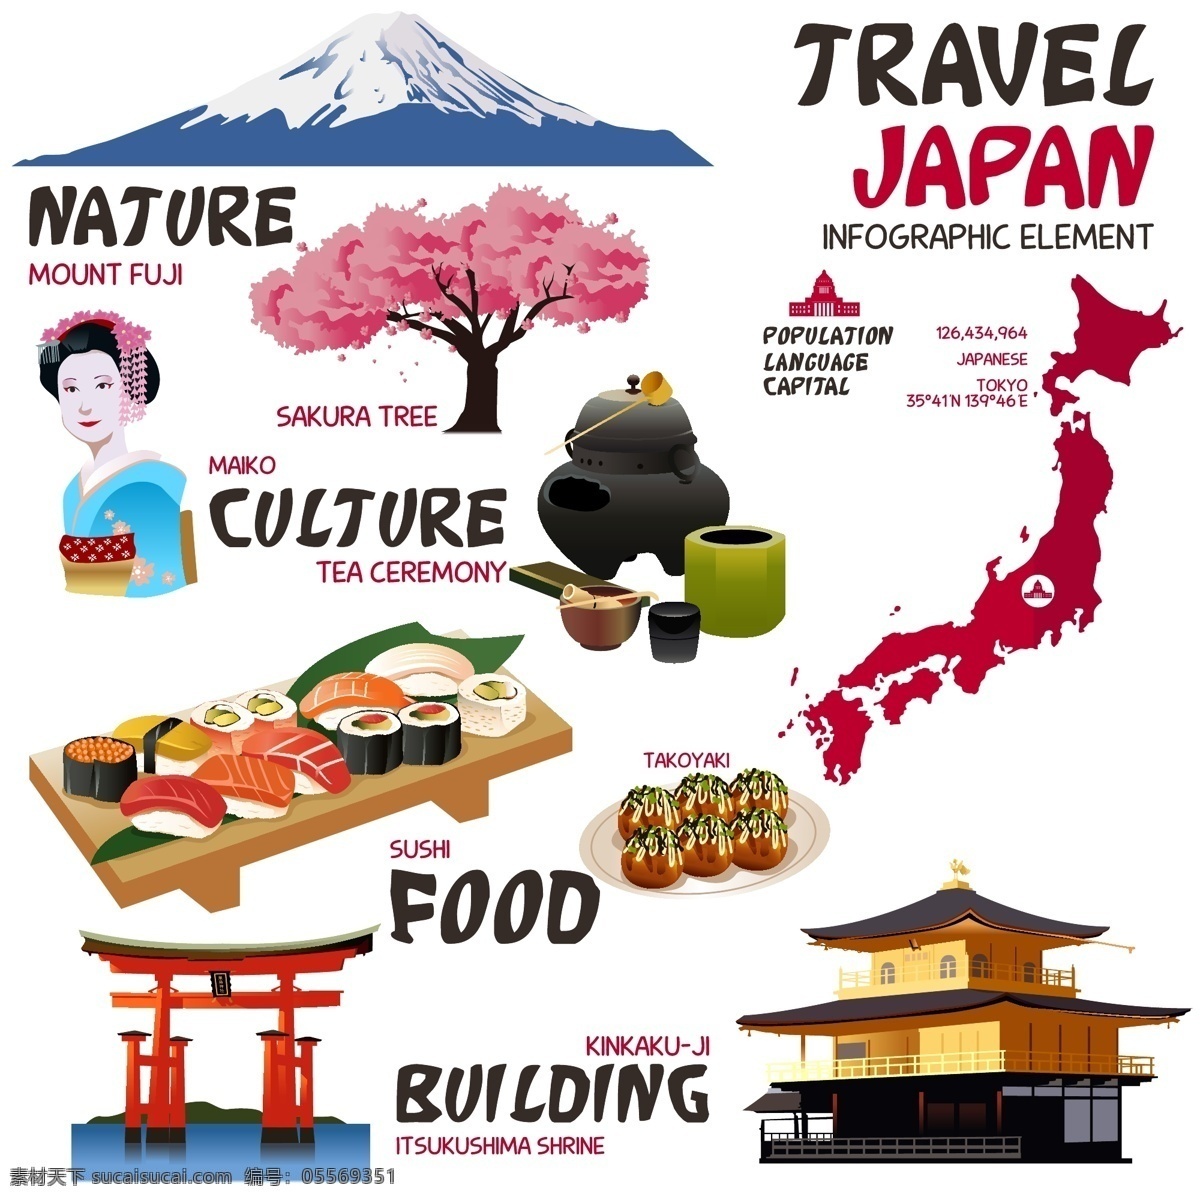 时尚 特色 日本 旅行 元素 宝士山 樱花 人物 美食 寿司 建筑 外观 地图